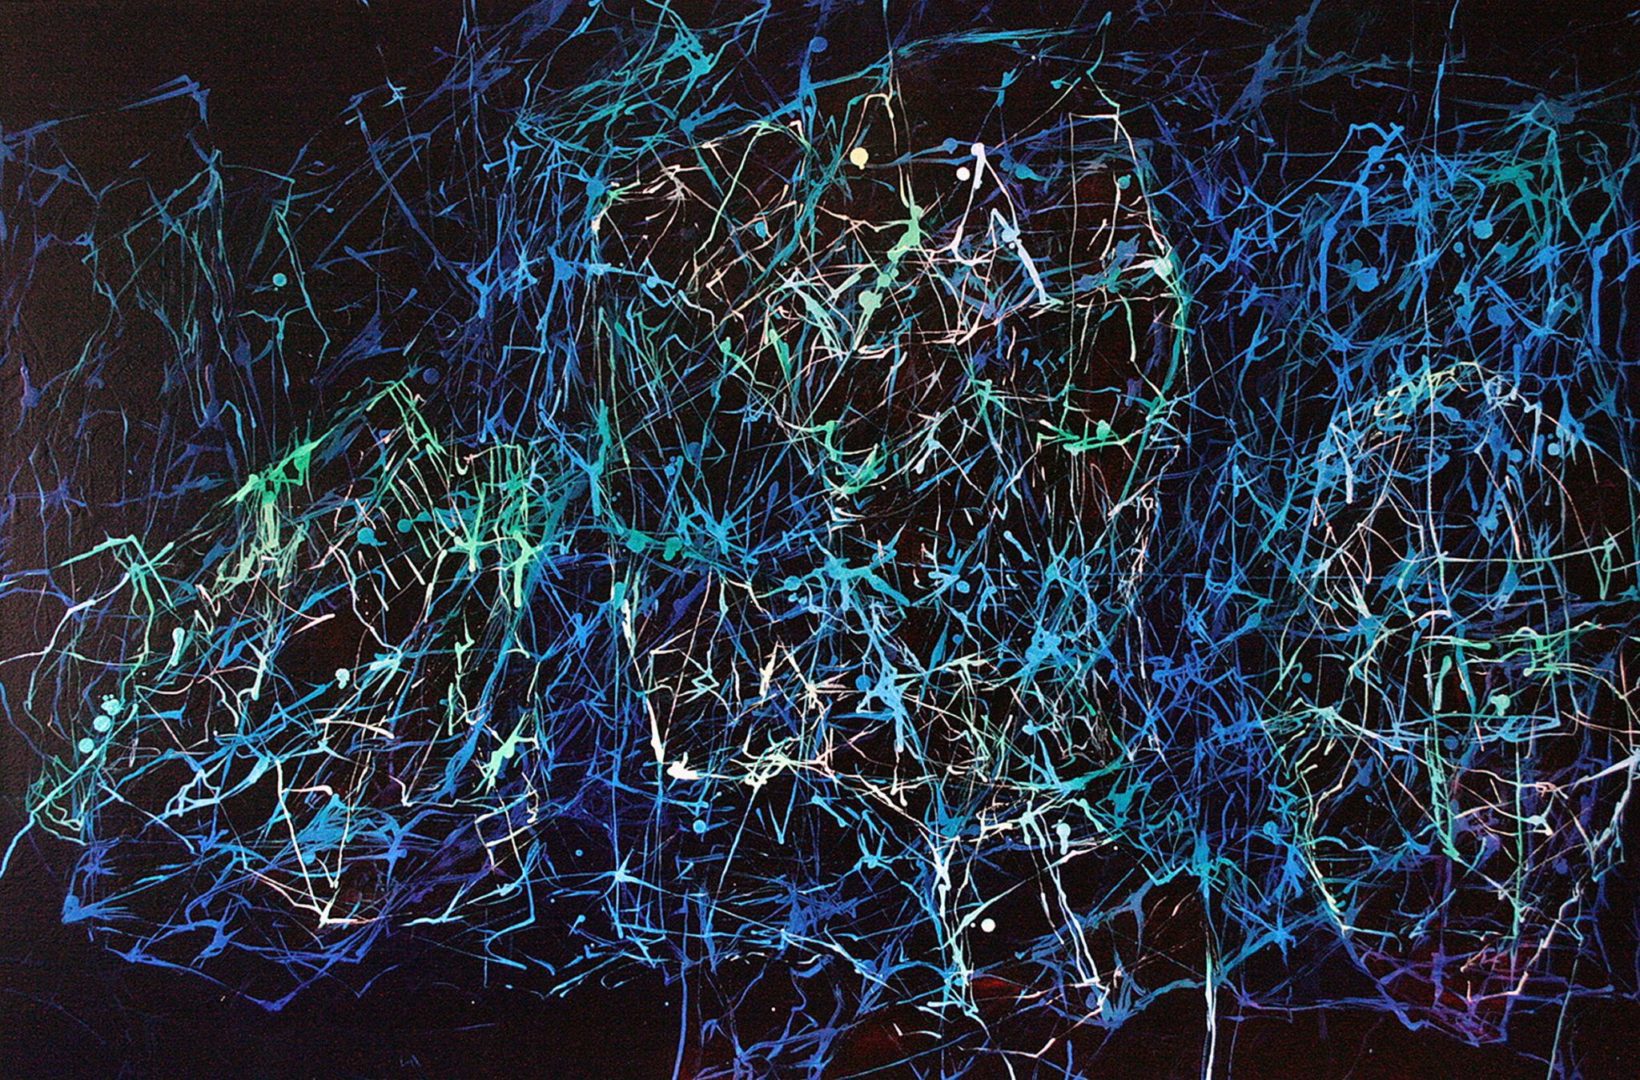 Cyberhug - Acryl Lasur auf Leinwand, 80 x 120 cm, 2012 ©Ursula Heermann-Jensen